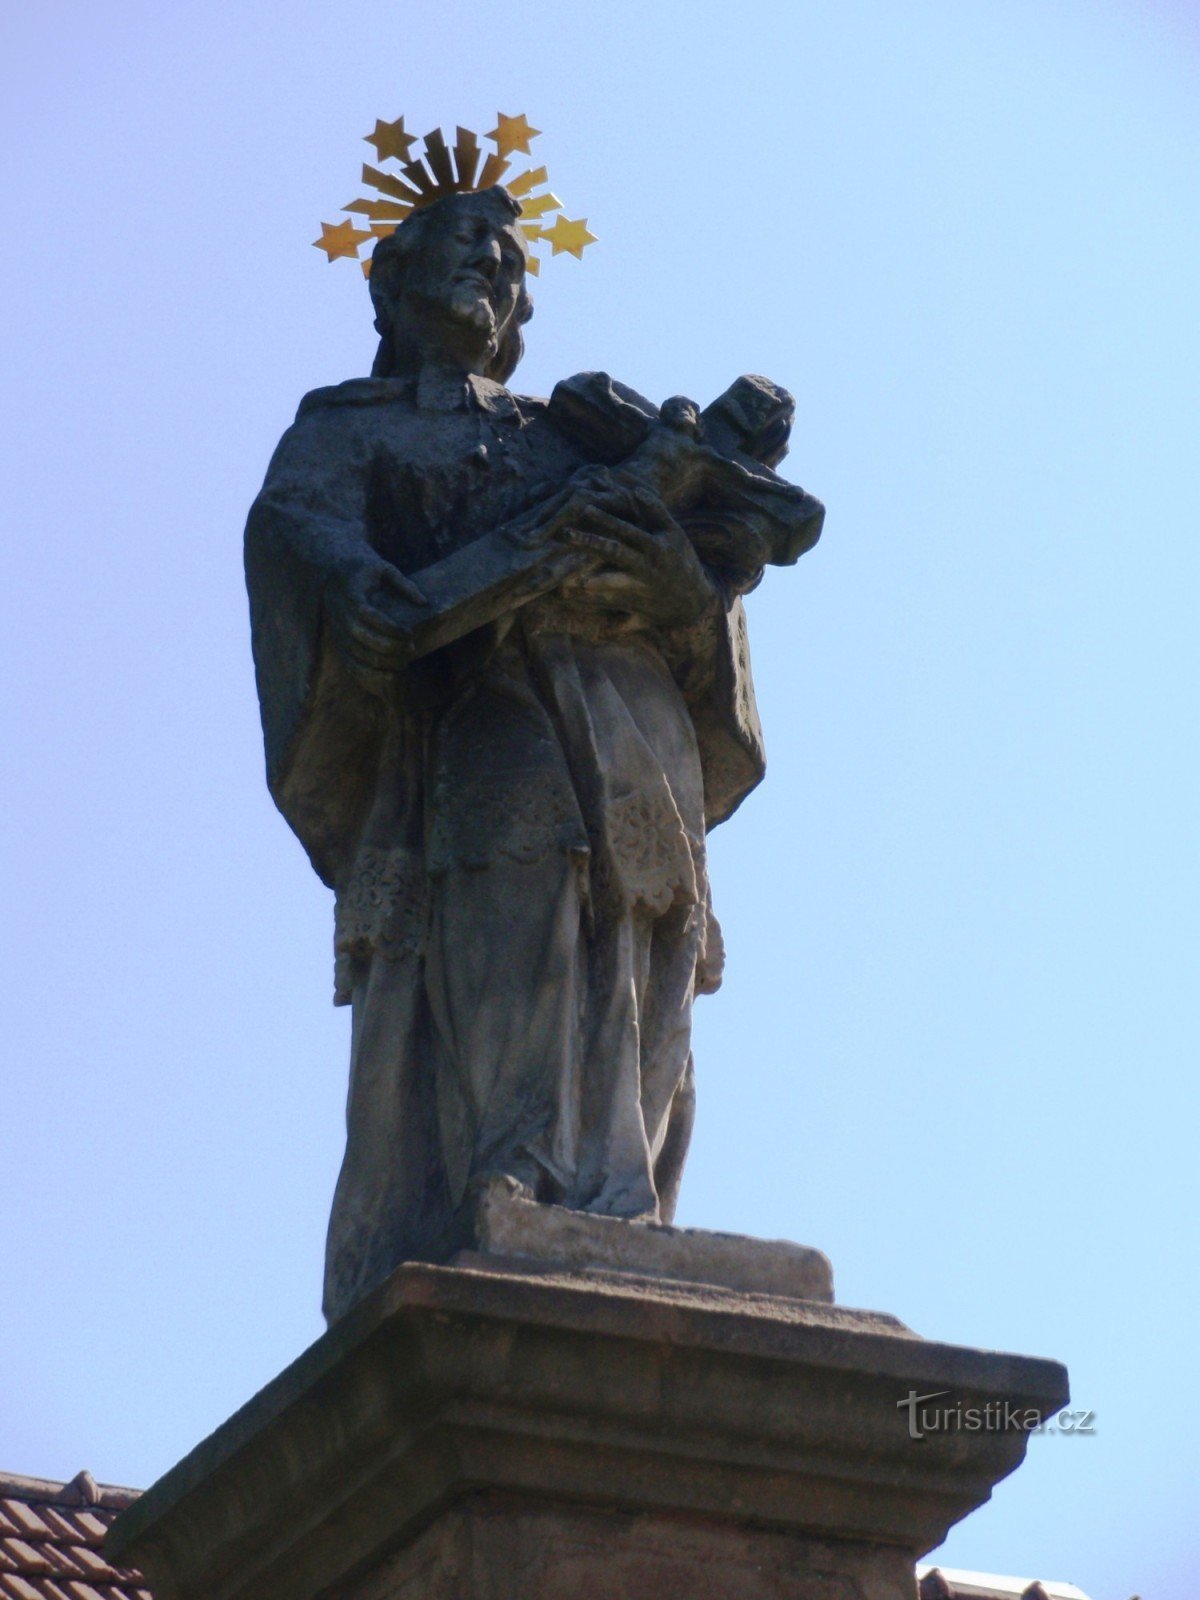 聖の像ボリトフのヤン・ネポムツキー